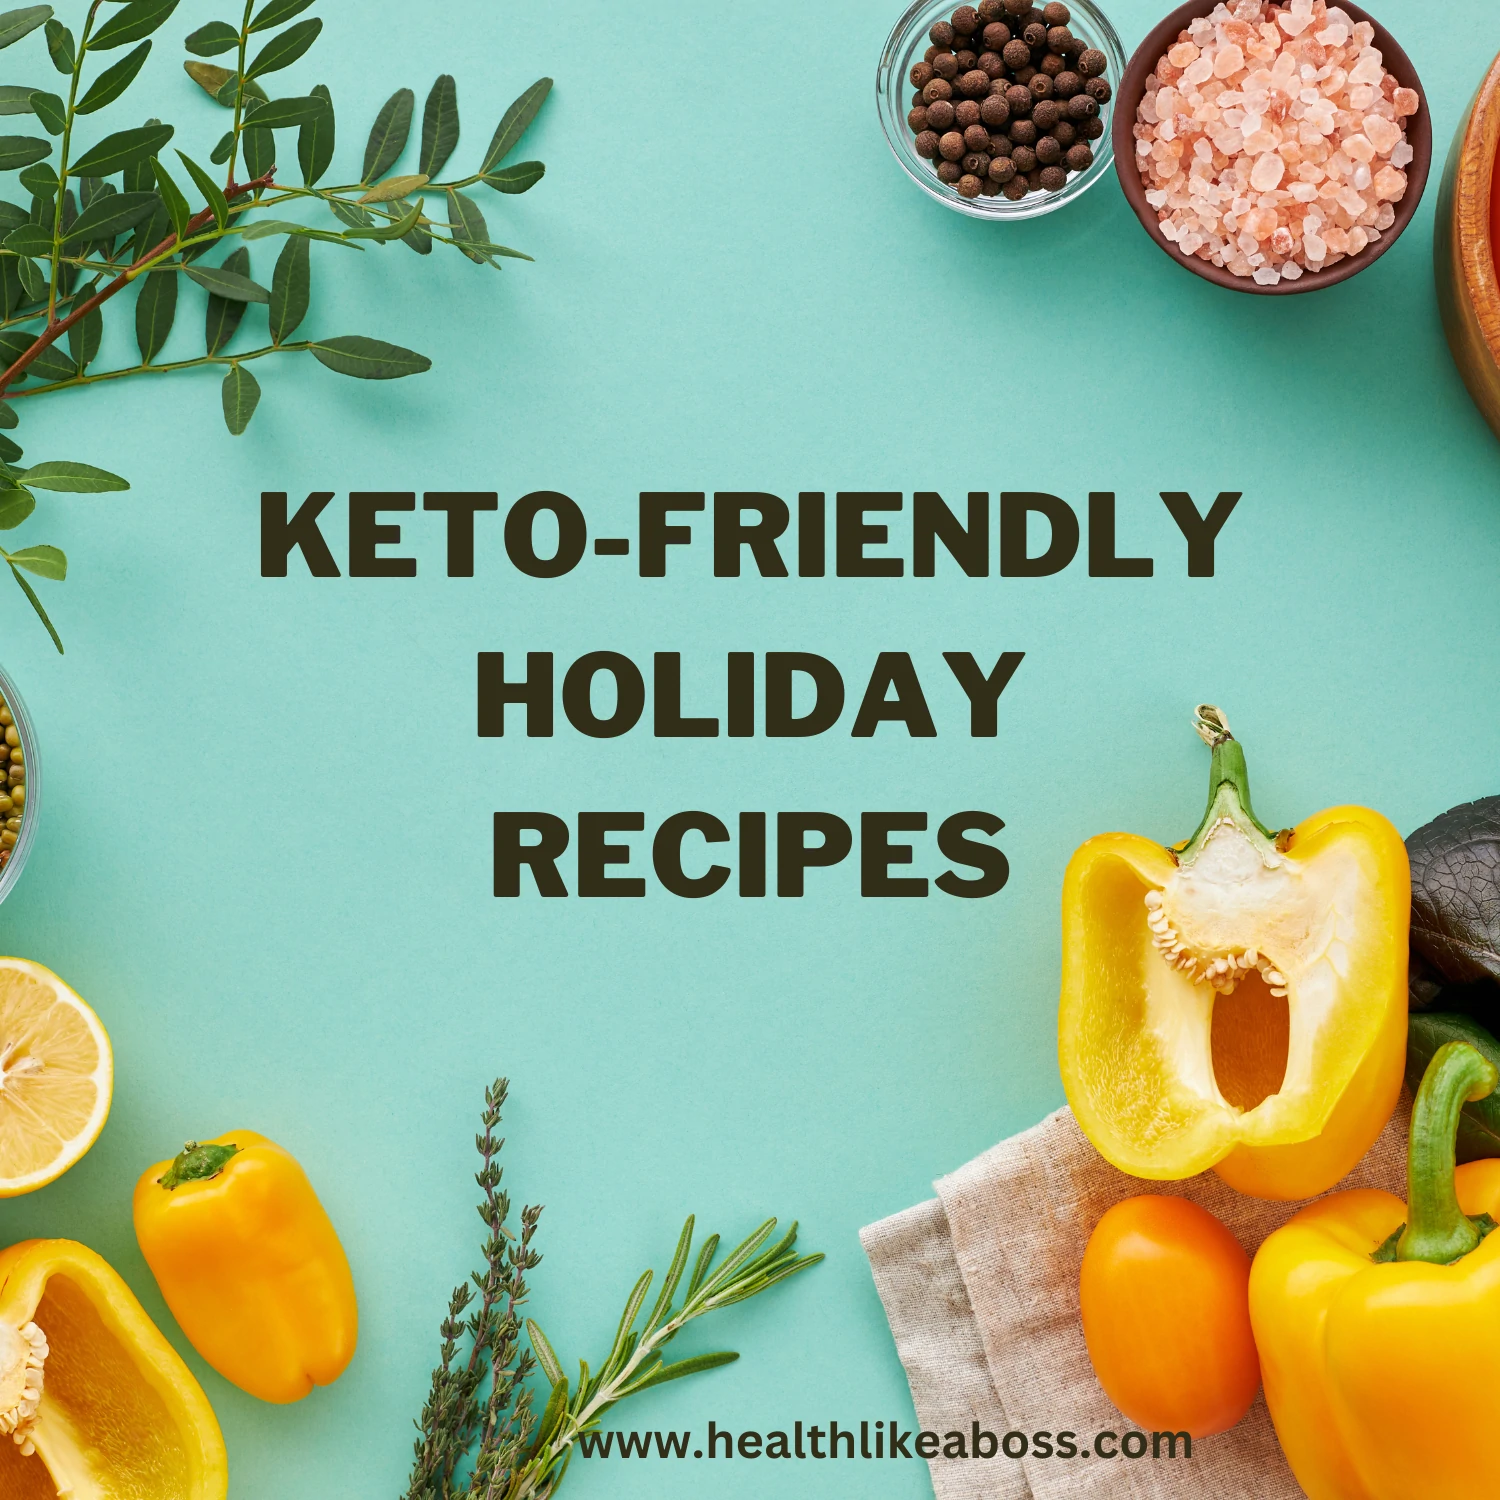 Keto-Friendly Holiday Recipes